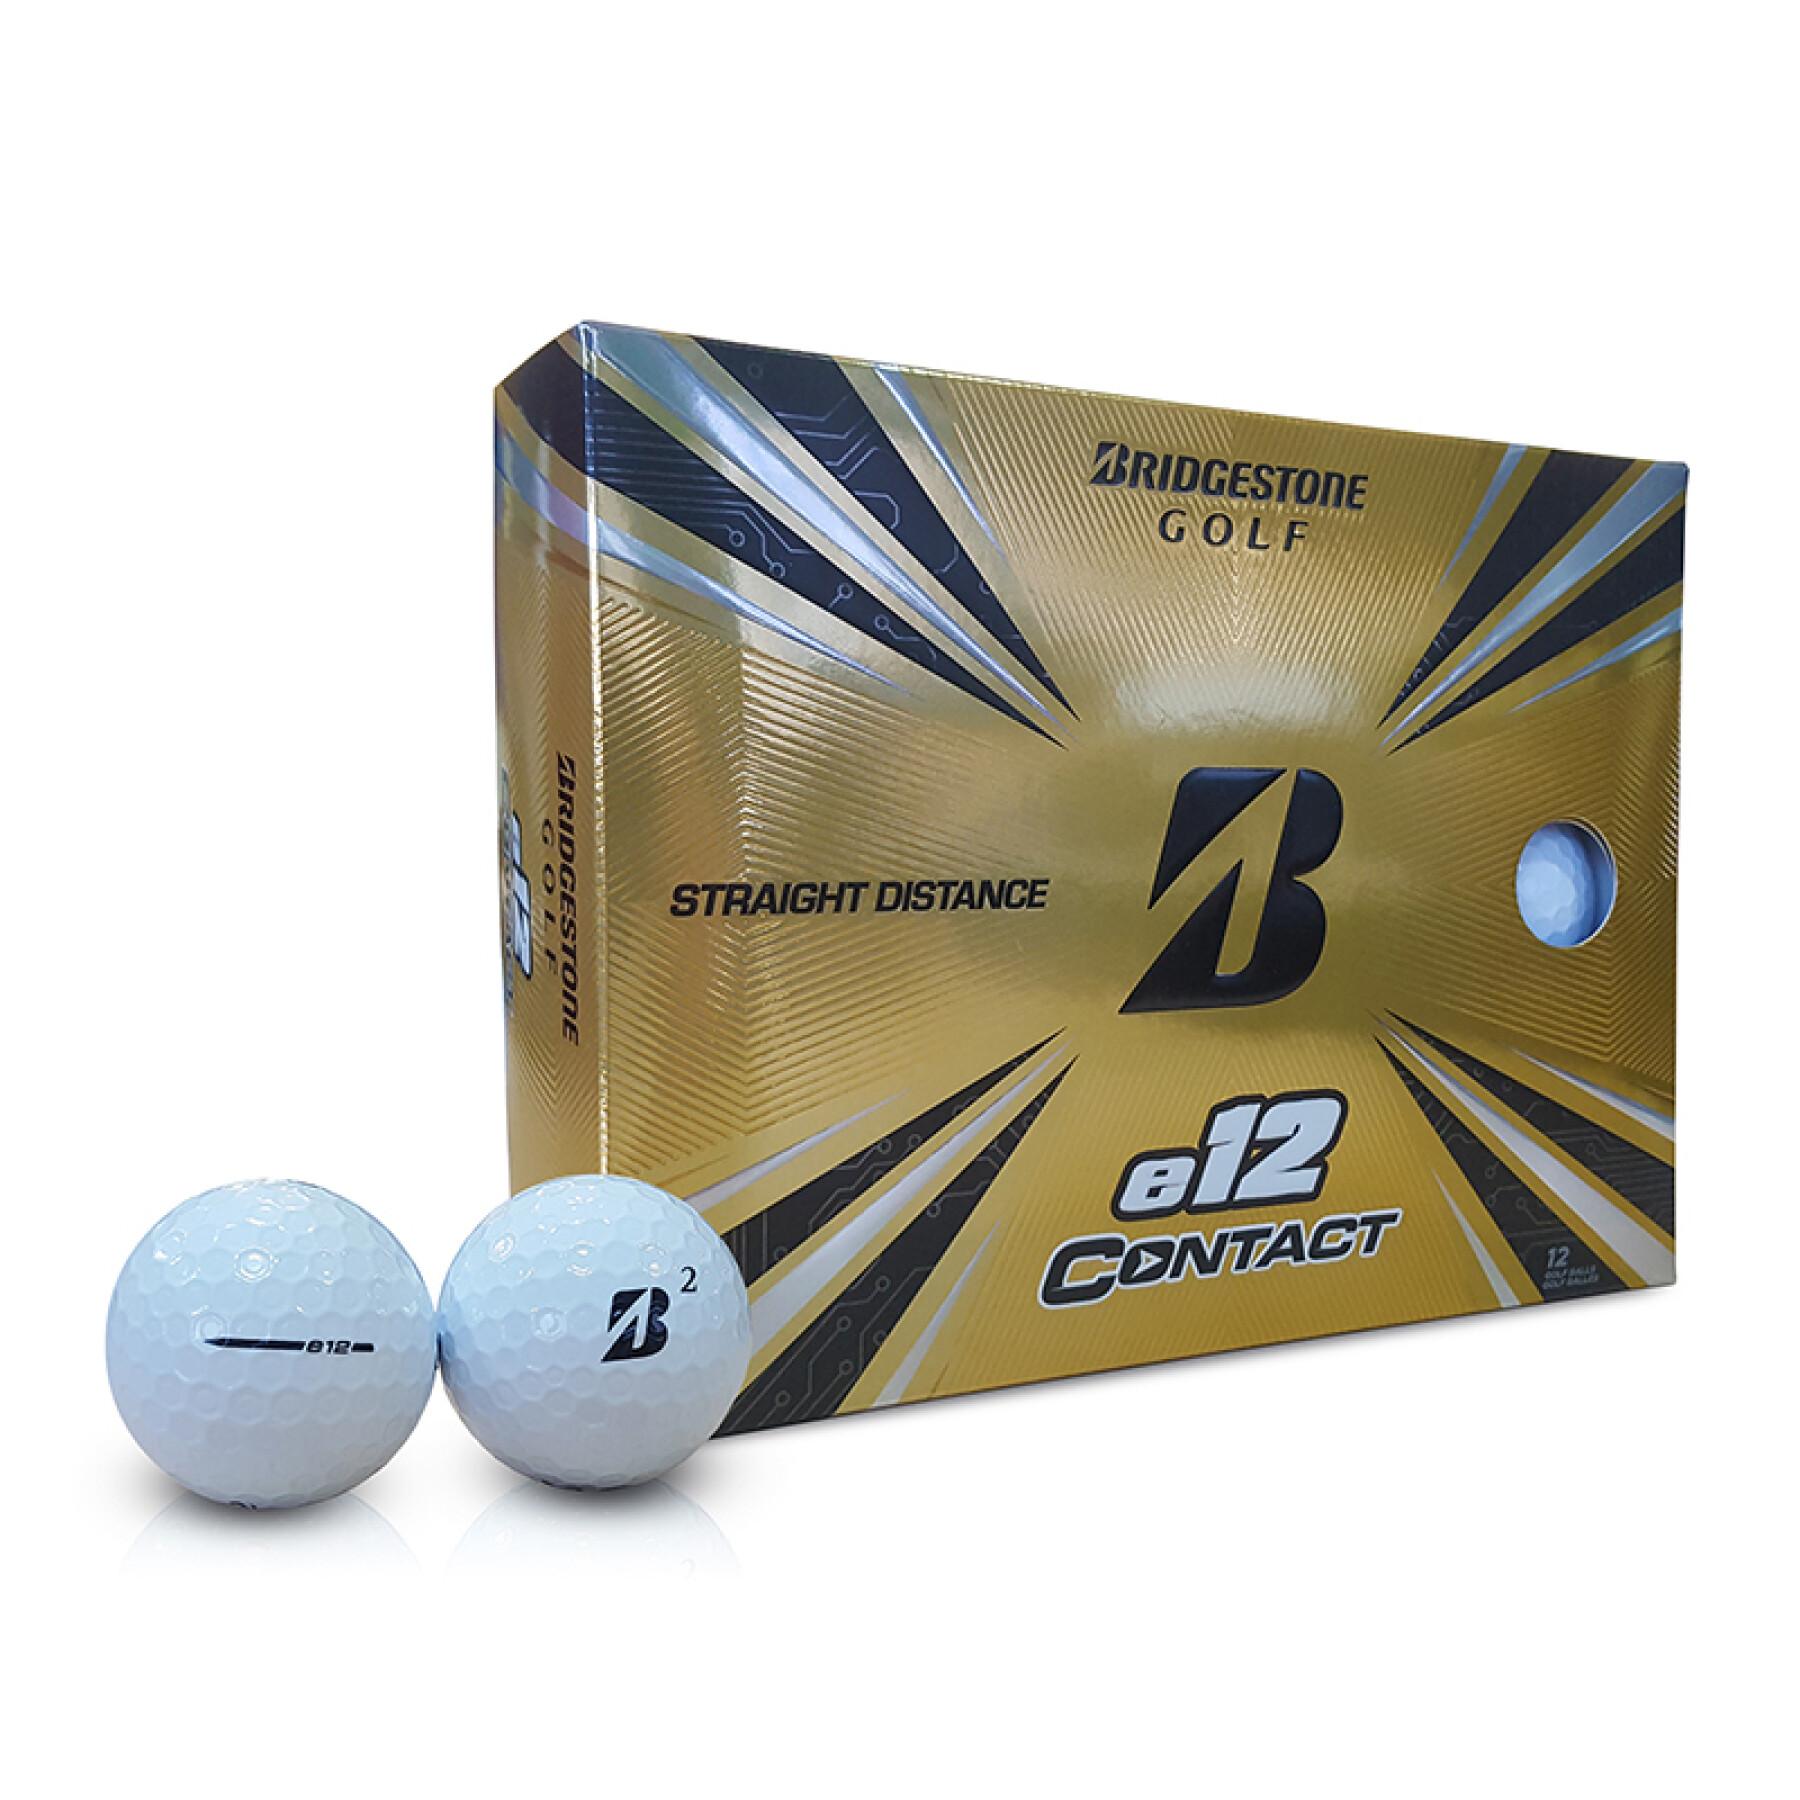 Balles de golf Bridgestone E12 Contact